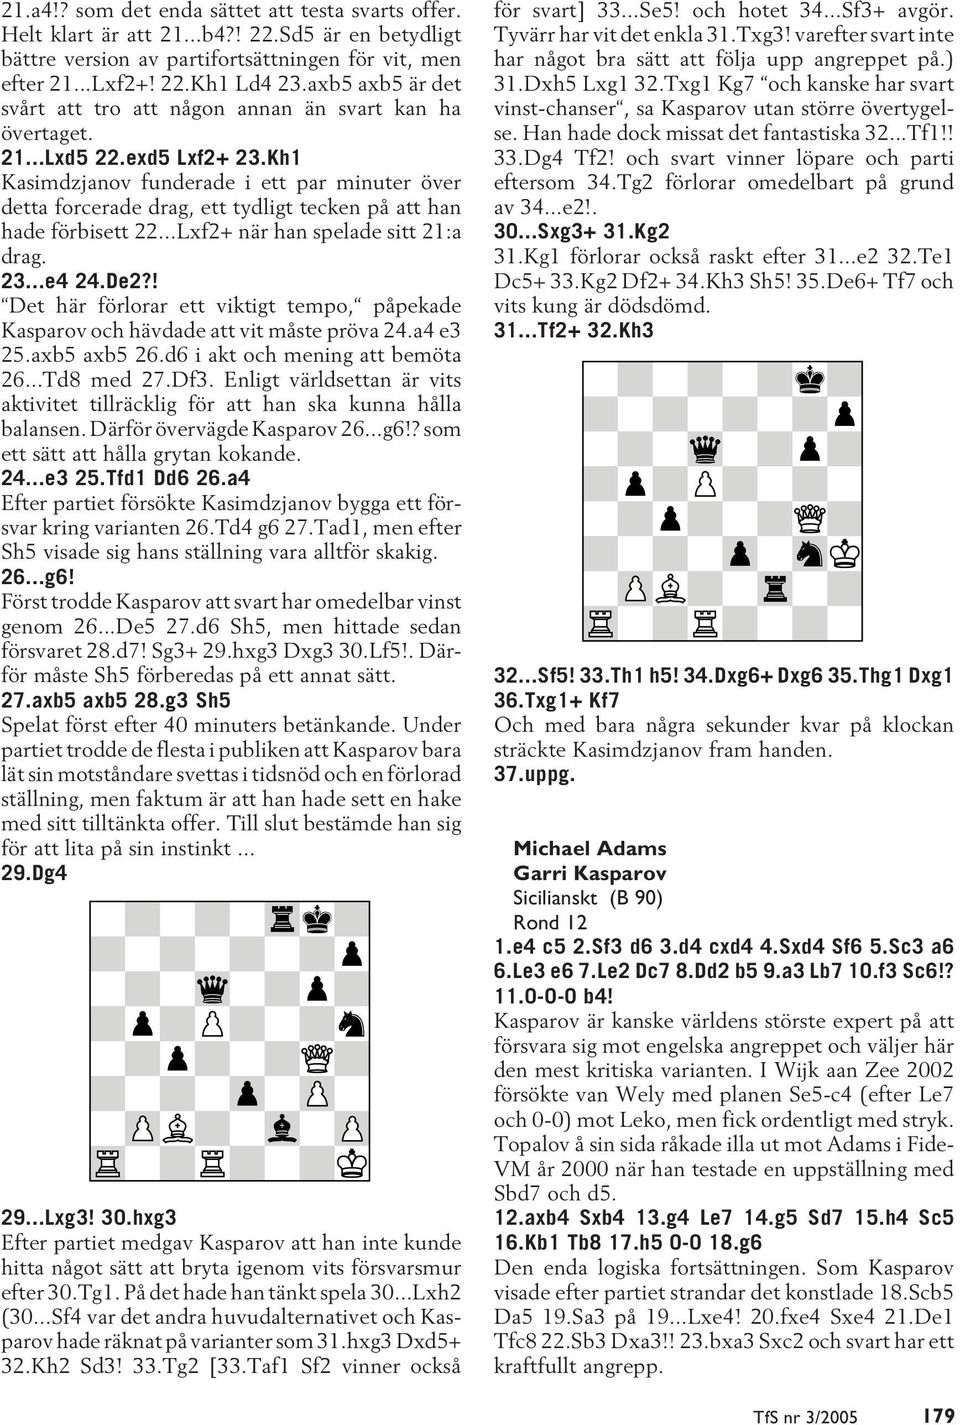 Kh1 Kasimdzjanov funderade i ett par minuter över detta forcerade drag, ett tydligt tecken på att han hade förbisett 22...Lxf2+ när han spelade sitt 21:a drag. 23...e4 24.De2?